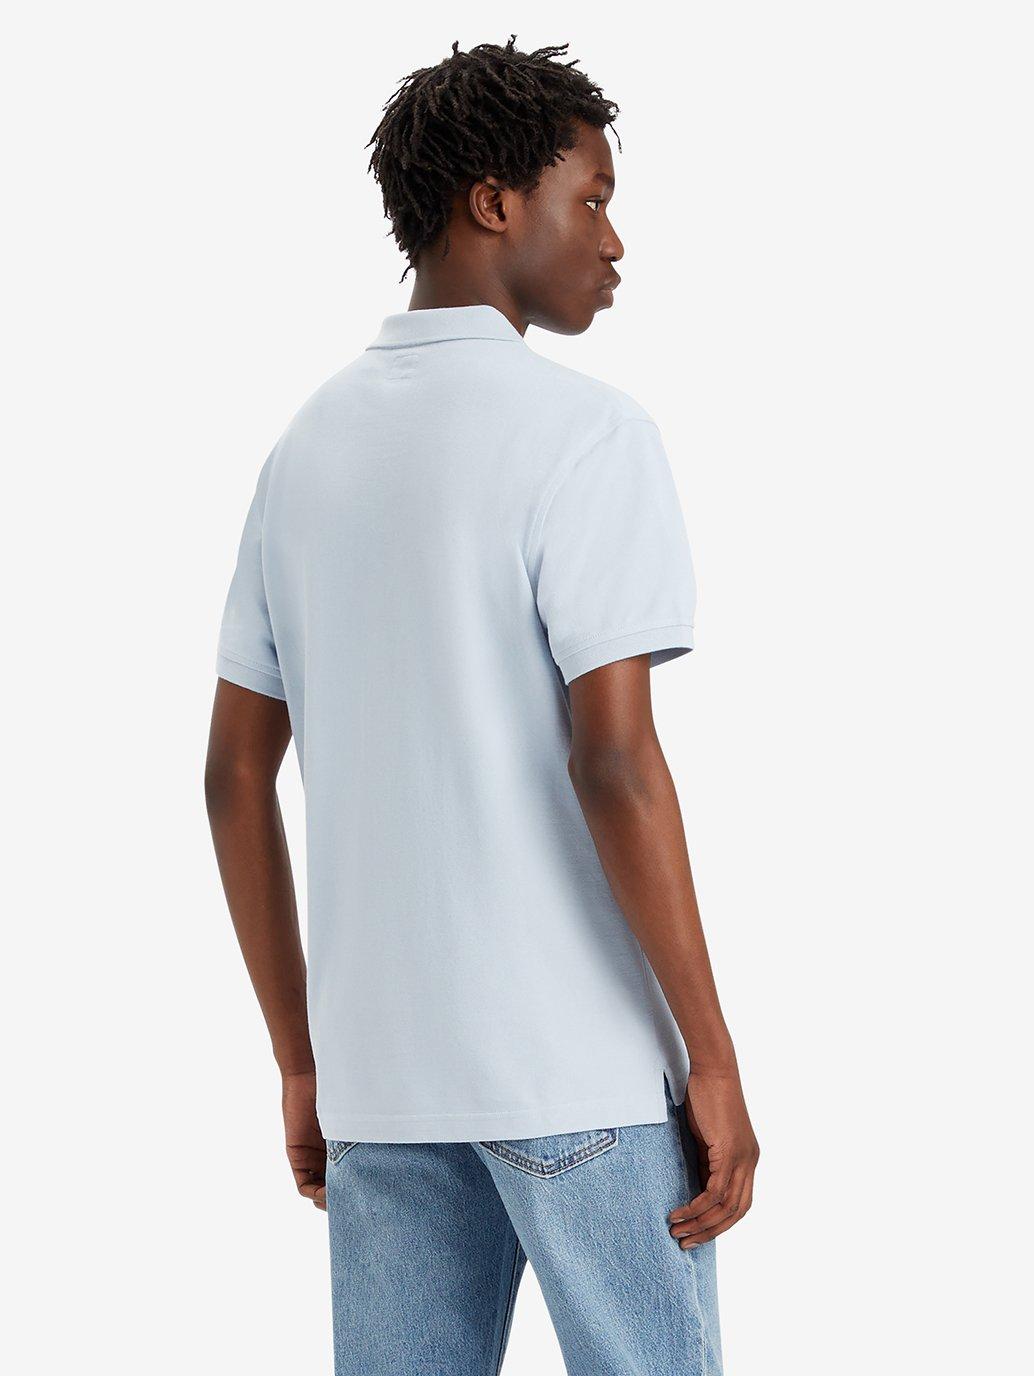 Buy Levi's® Men's Housemark Polo Shirt | Levi’s® Official Online Store PH